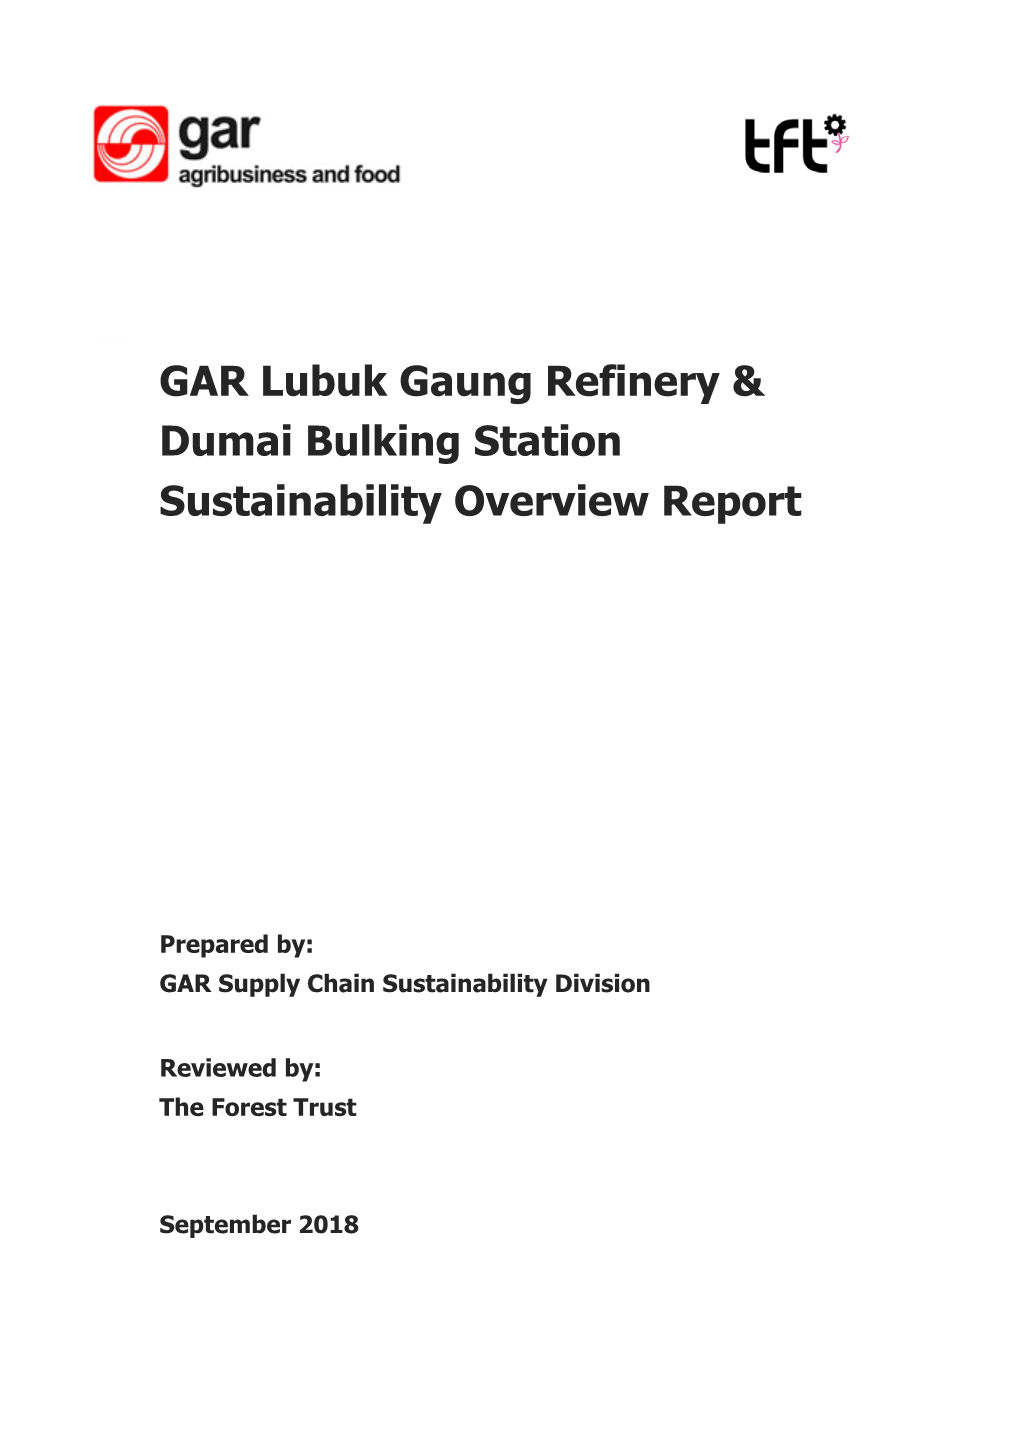 GAR Lubuk Gaung Refinery & Dumai Bulking Station Sustainability